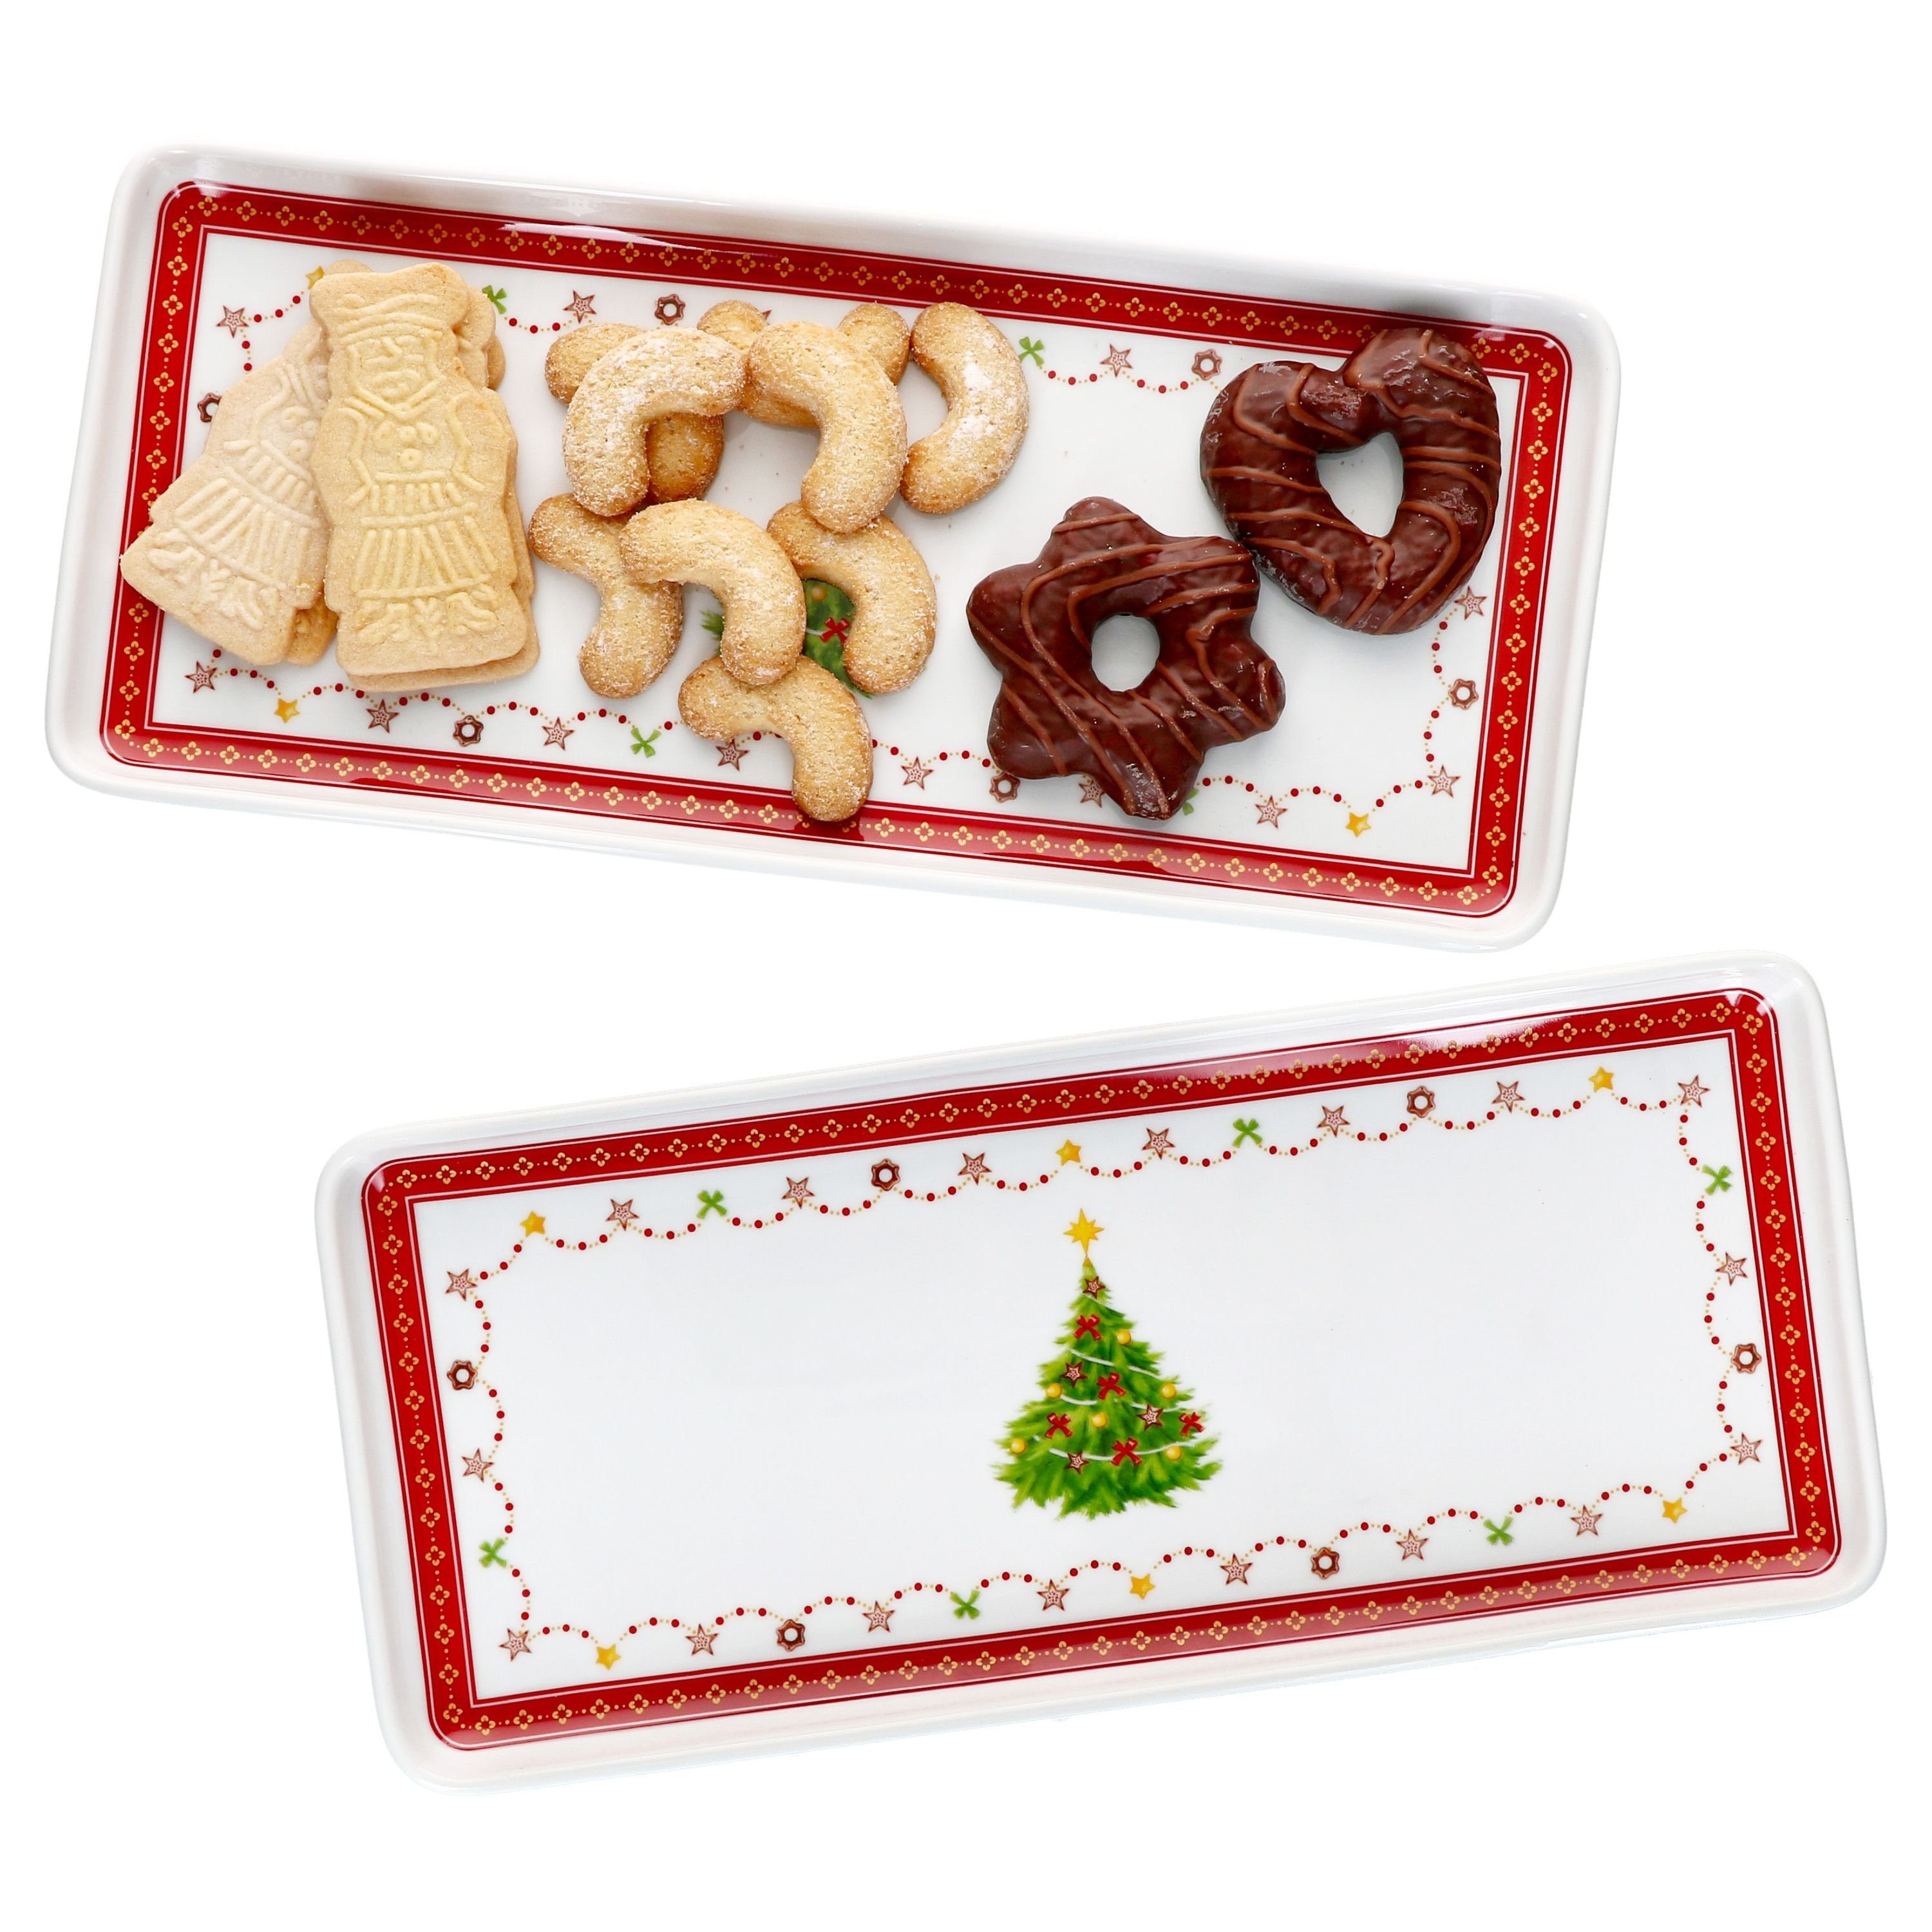 Weihnachten, MamboCat rechteckig 2x Porzellan Porzellan Weihnachtstraum Servierplatte Kuchenplatte